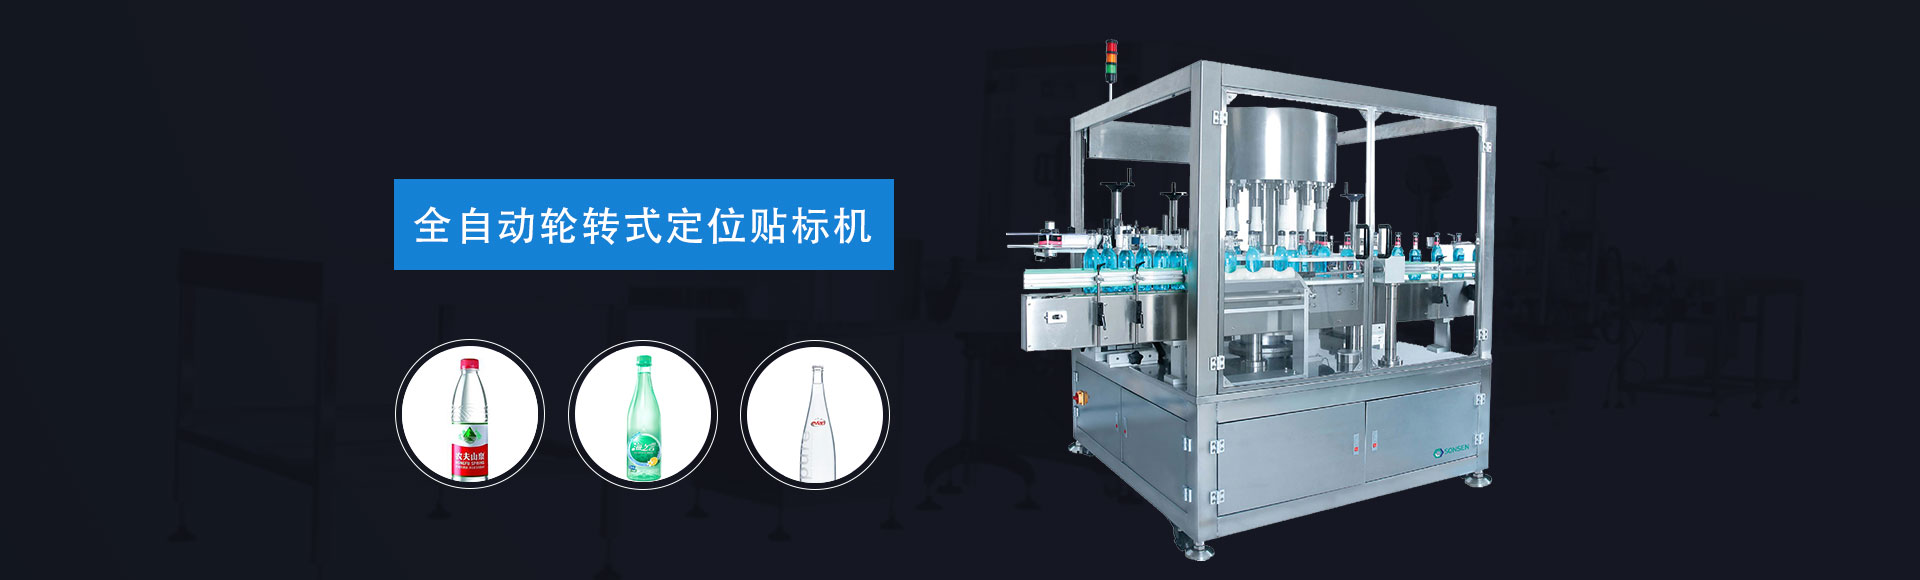 广州尚乘包装的全自动转轮式定位贴标机,自动贴标机严格的高技术把关,打造世界级质量产品